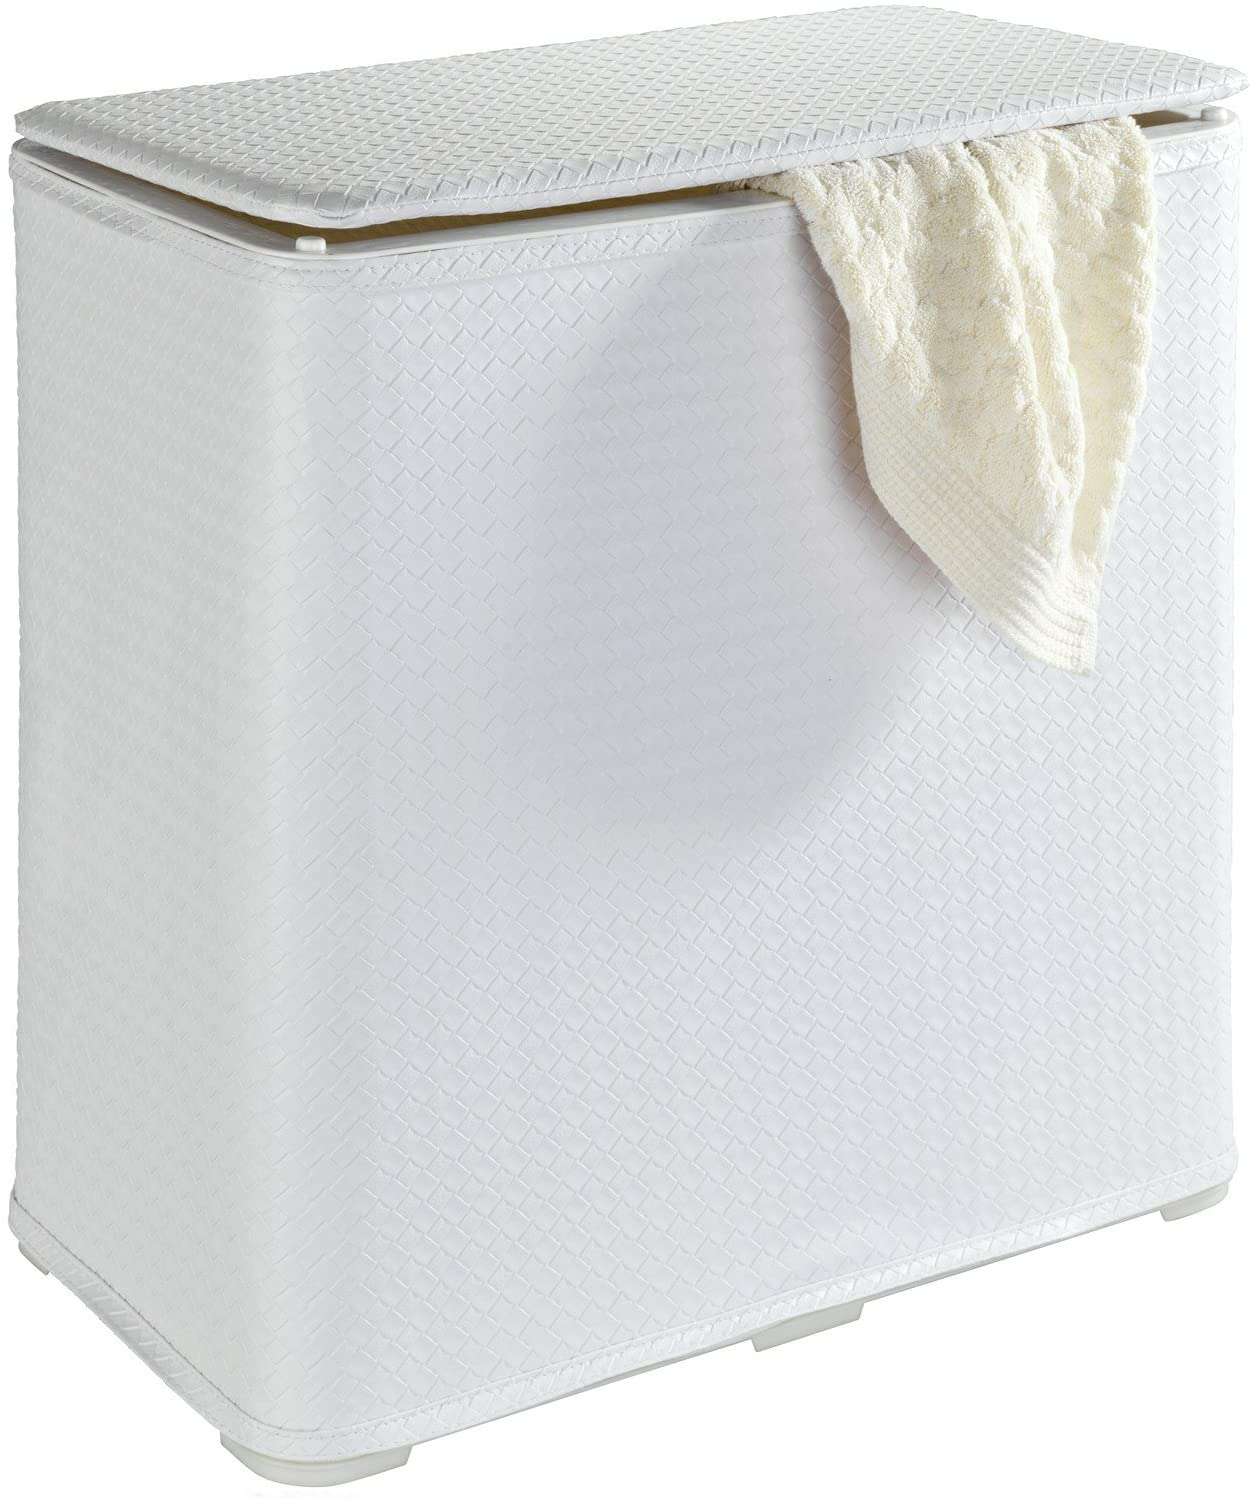 Wäschetruhe Wanda - Wäschekorb mit Deckel Fassungsvermögen: 65 l, Kunststoff, 49 x 50 x 27 cm, Weiß